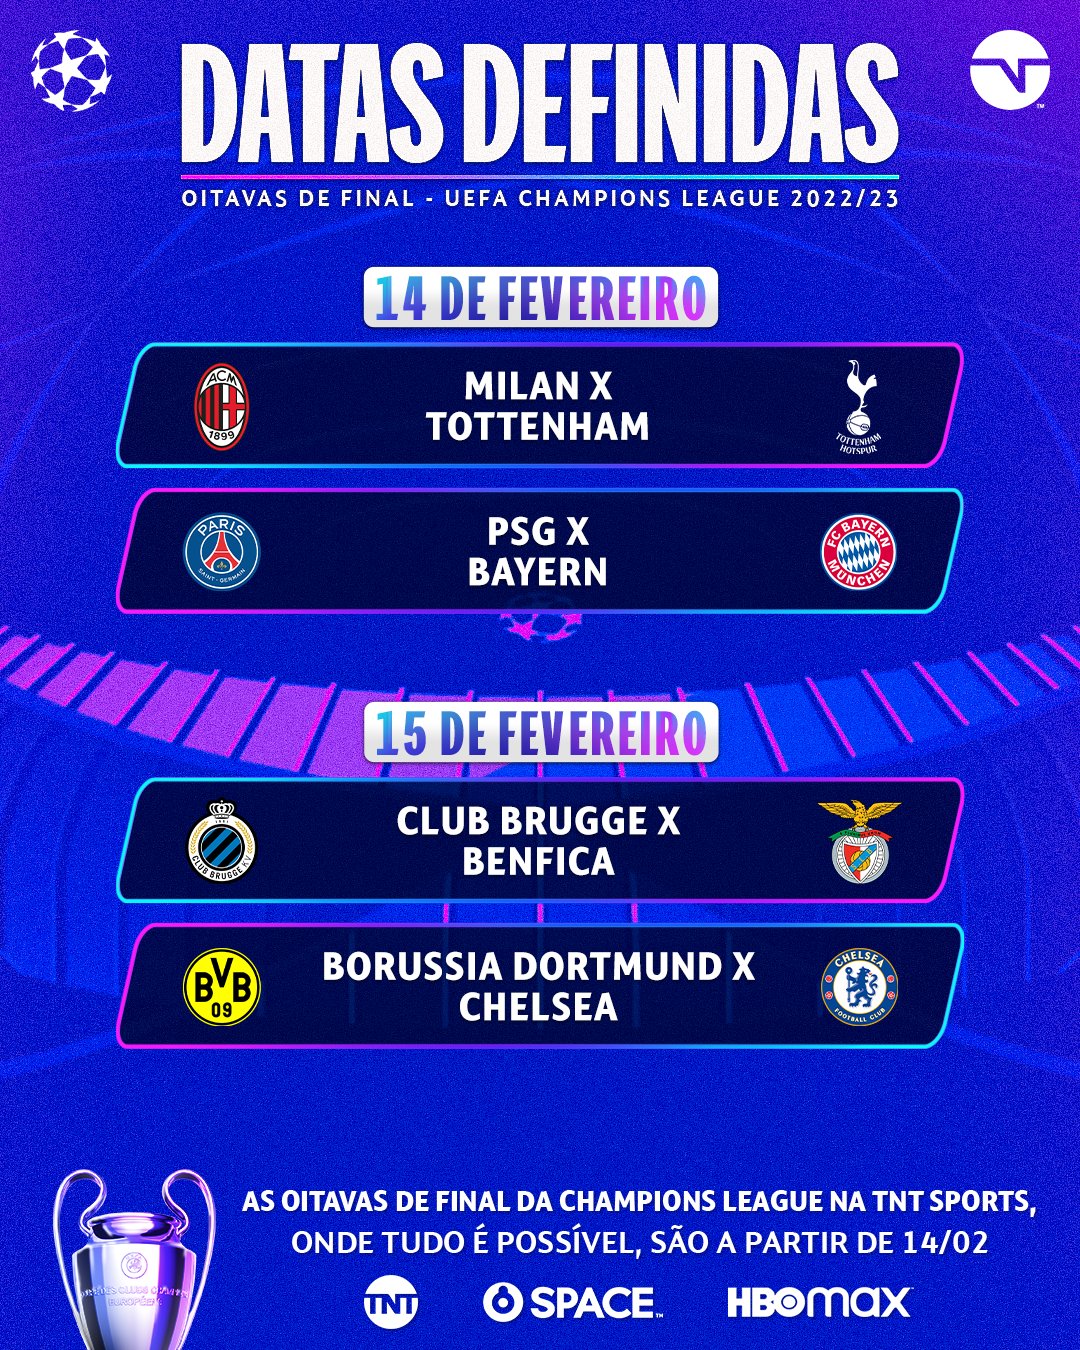 TNT Sports Brasil - As datas das oitavas de final da UEFA Champions League  estão definidas! E você assiste a TODOS OS JOGOS com a gente! E aí, para  qual confronto você